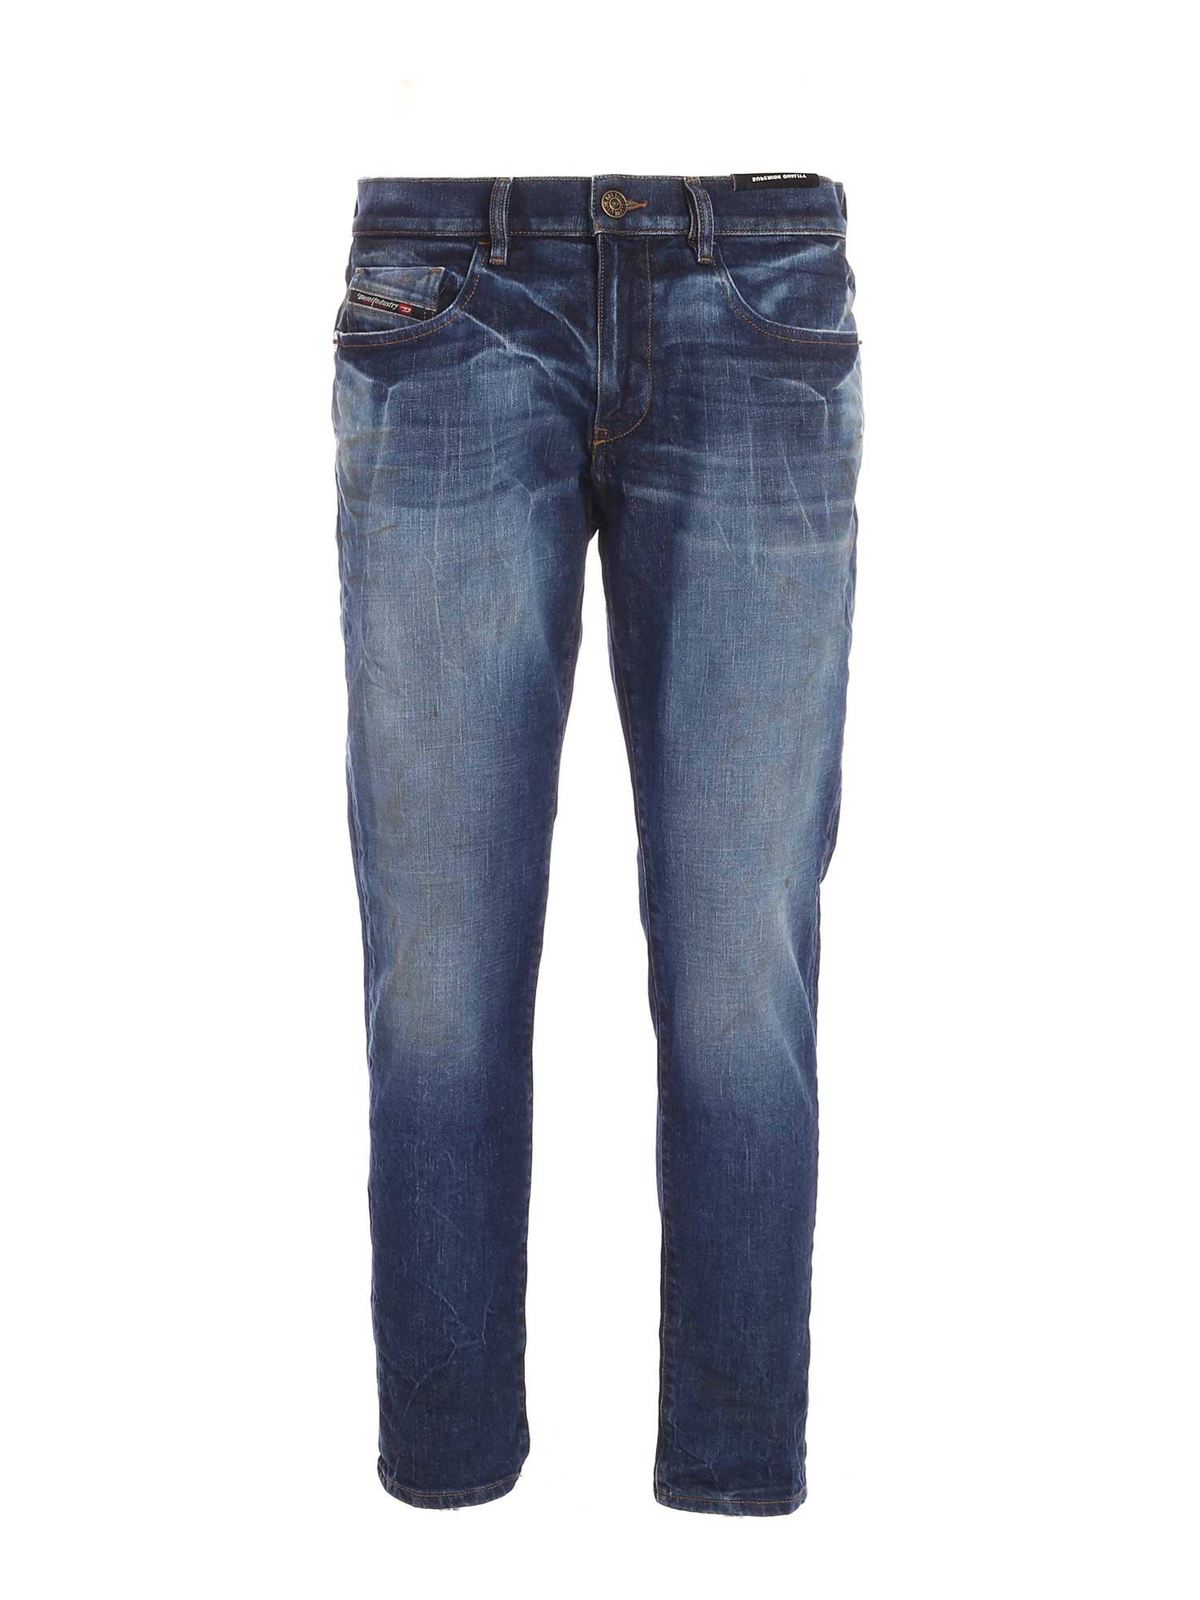 Straight leg jeans Diesel - D-Strukt faded jeans in blue - 00SPW409A1301